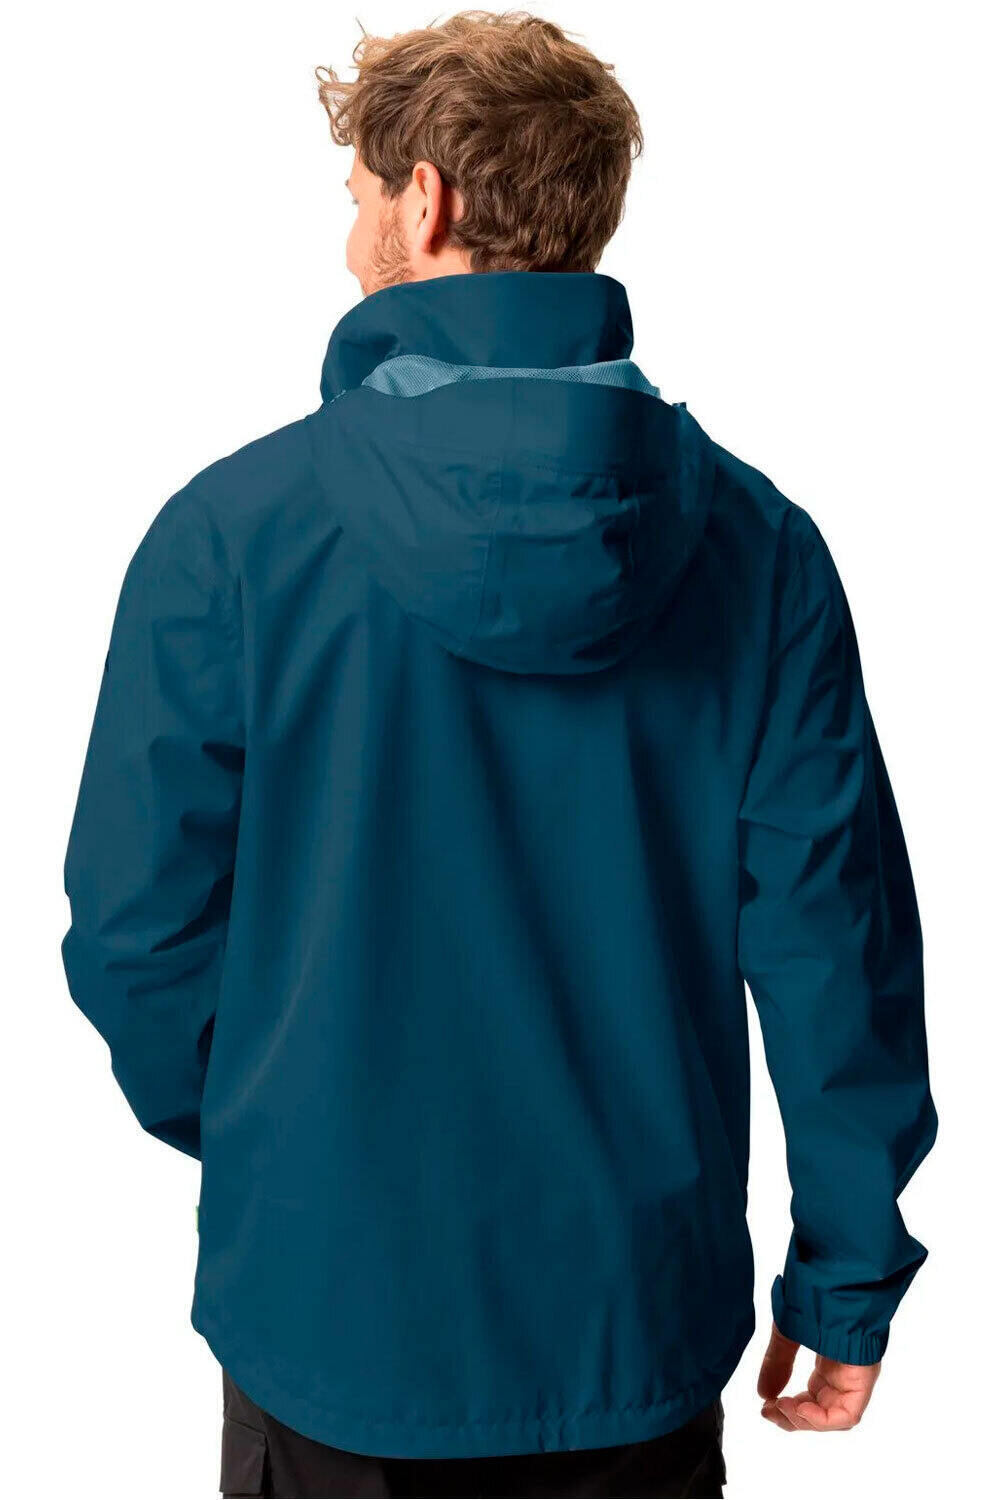 Vaude chaqueta impermeable hombre Men's Escape Light Jacket vista trasera